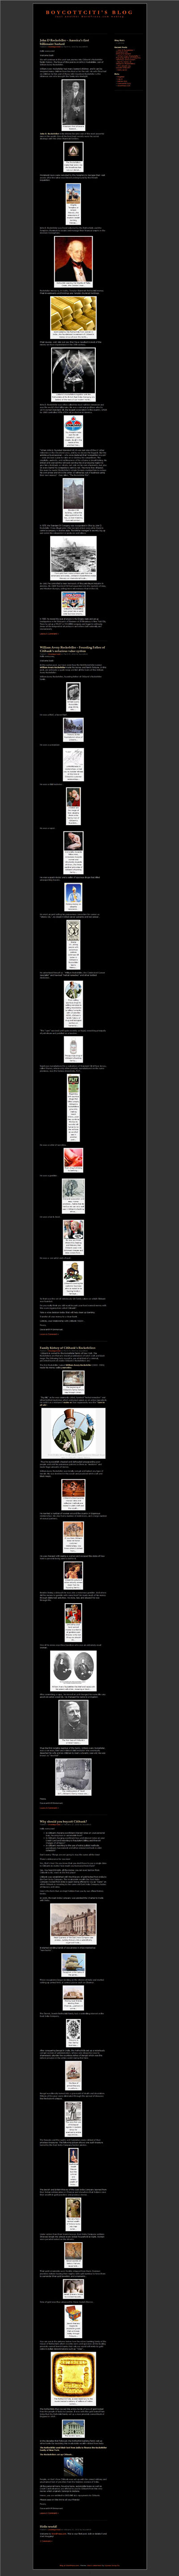 Boycottciti's Blog Page